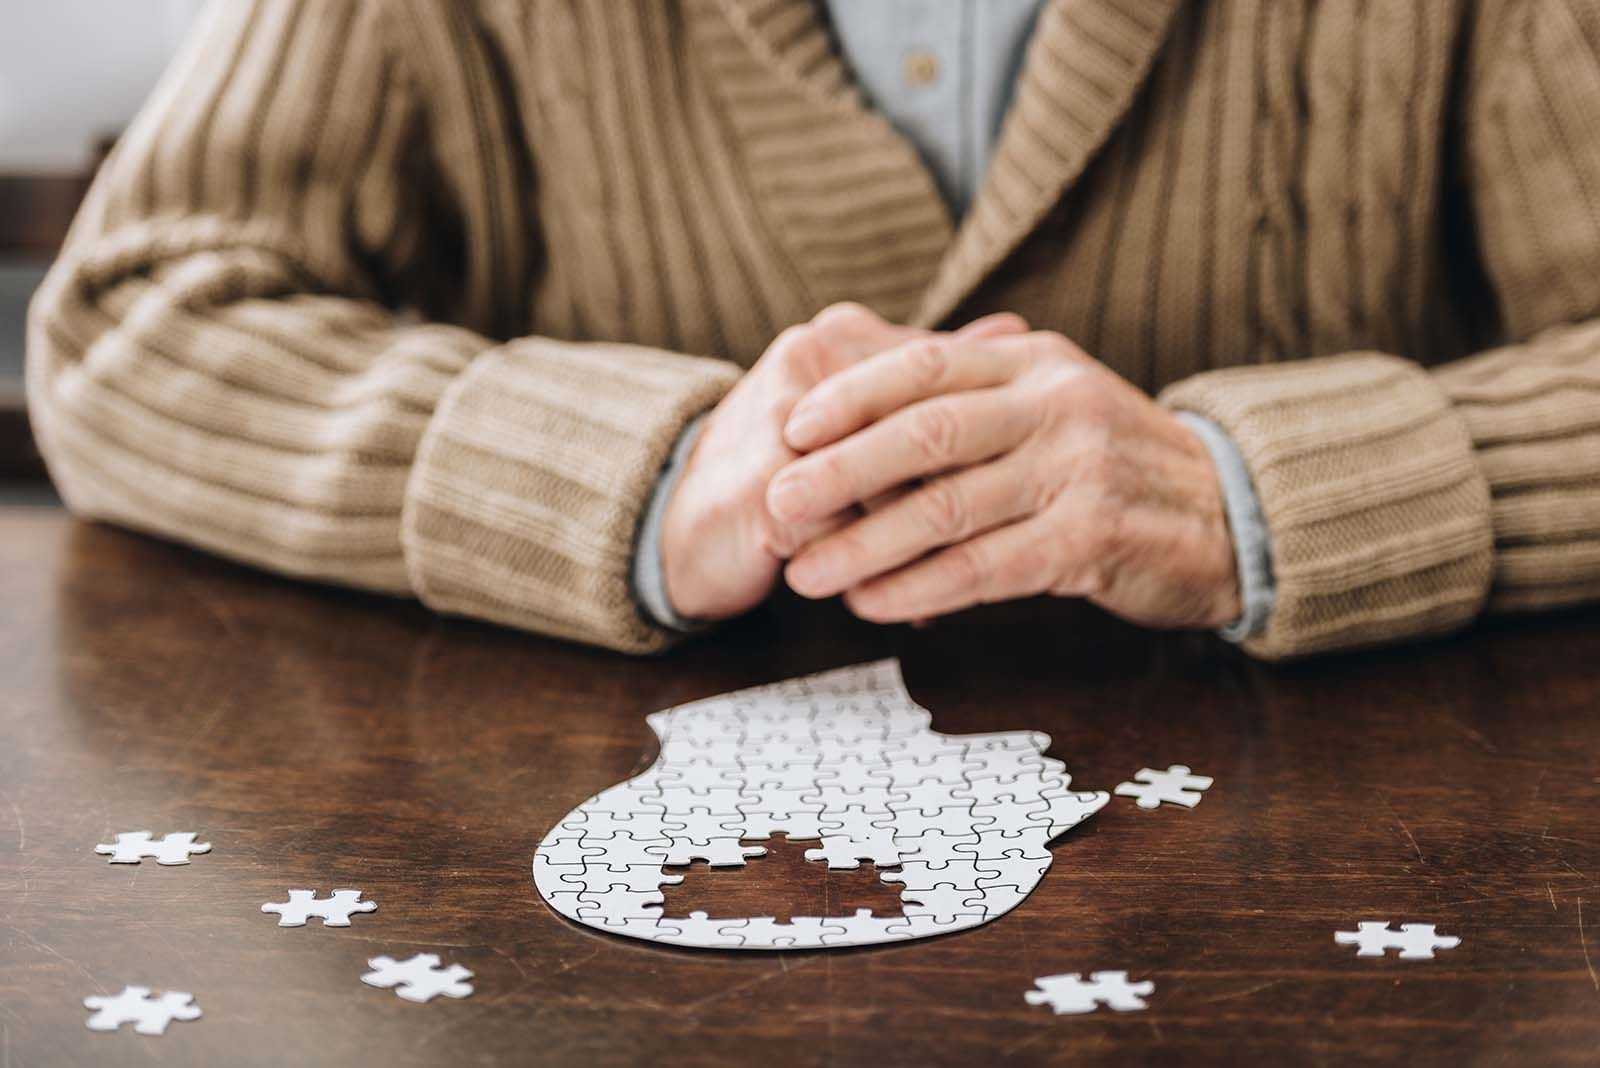 Auf dem Bild ist ein älterer Mann zu sehen, der ein Puzzle hält, das einen Kopf widerspiegelt. Das Gehirn fehlt.